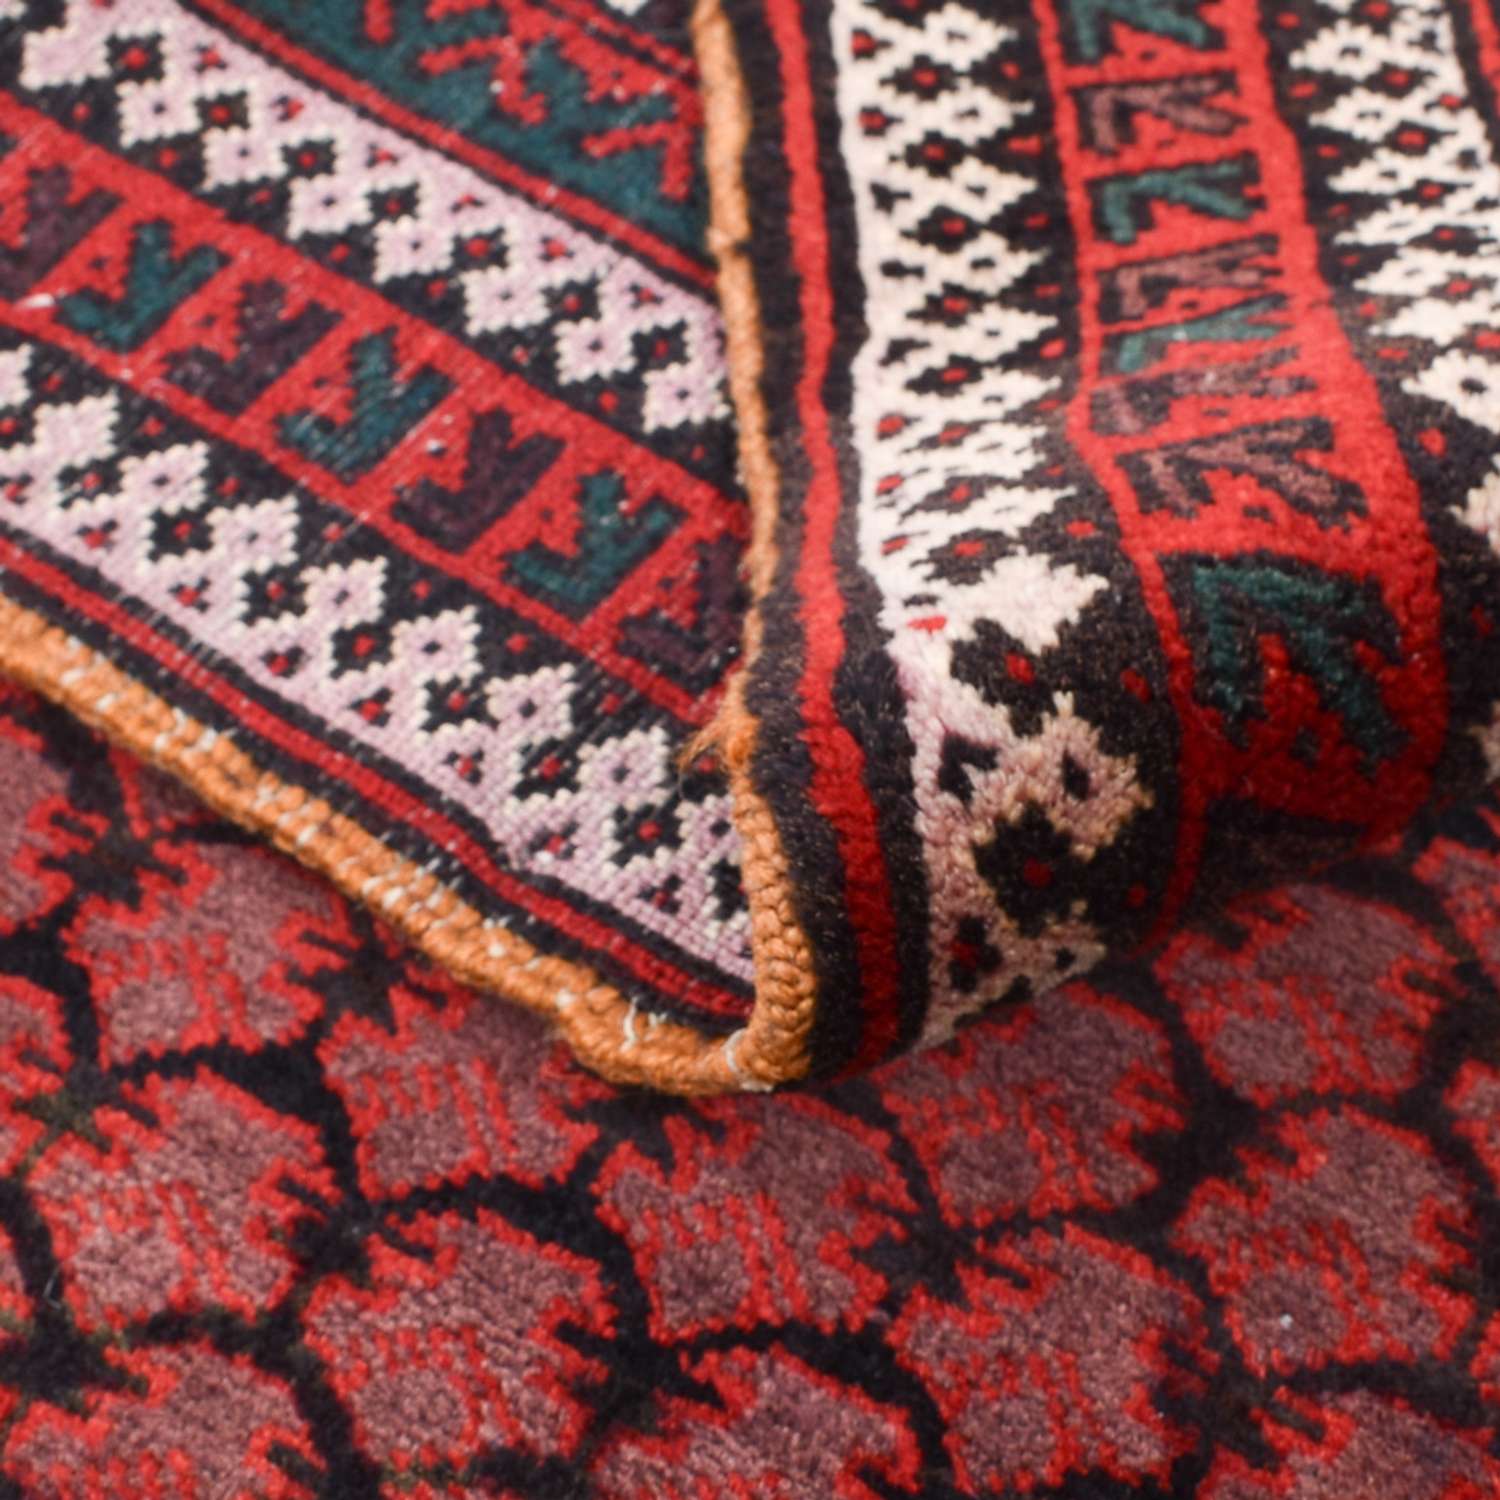 Dywan beludżycki - 141 x 94 cm - czerwony